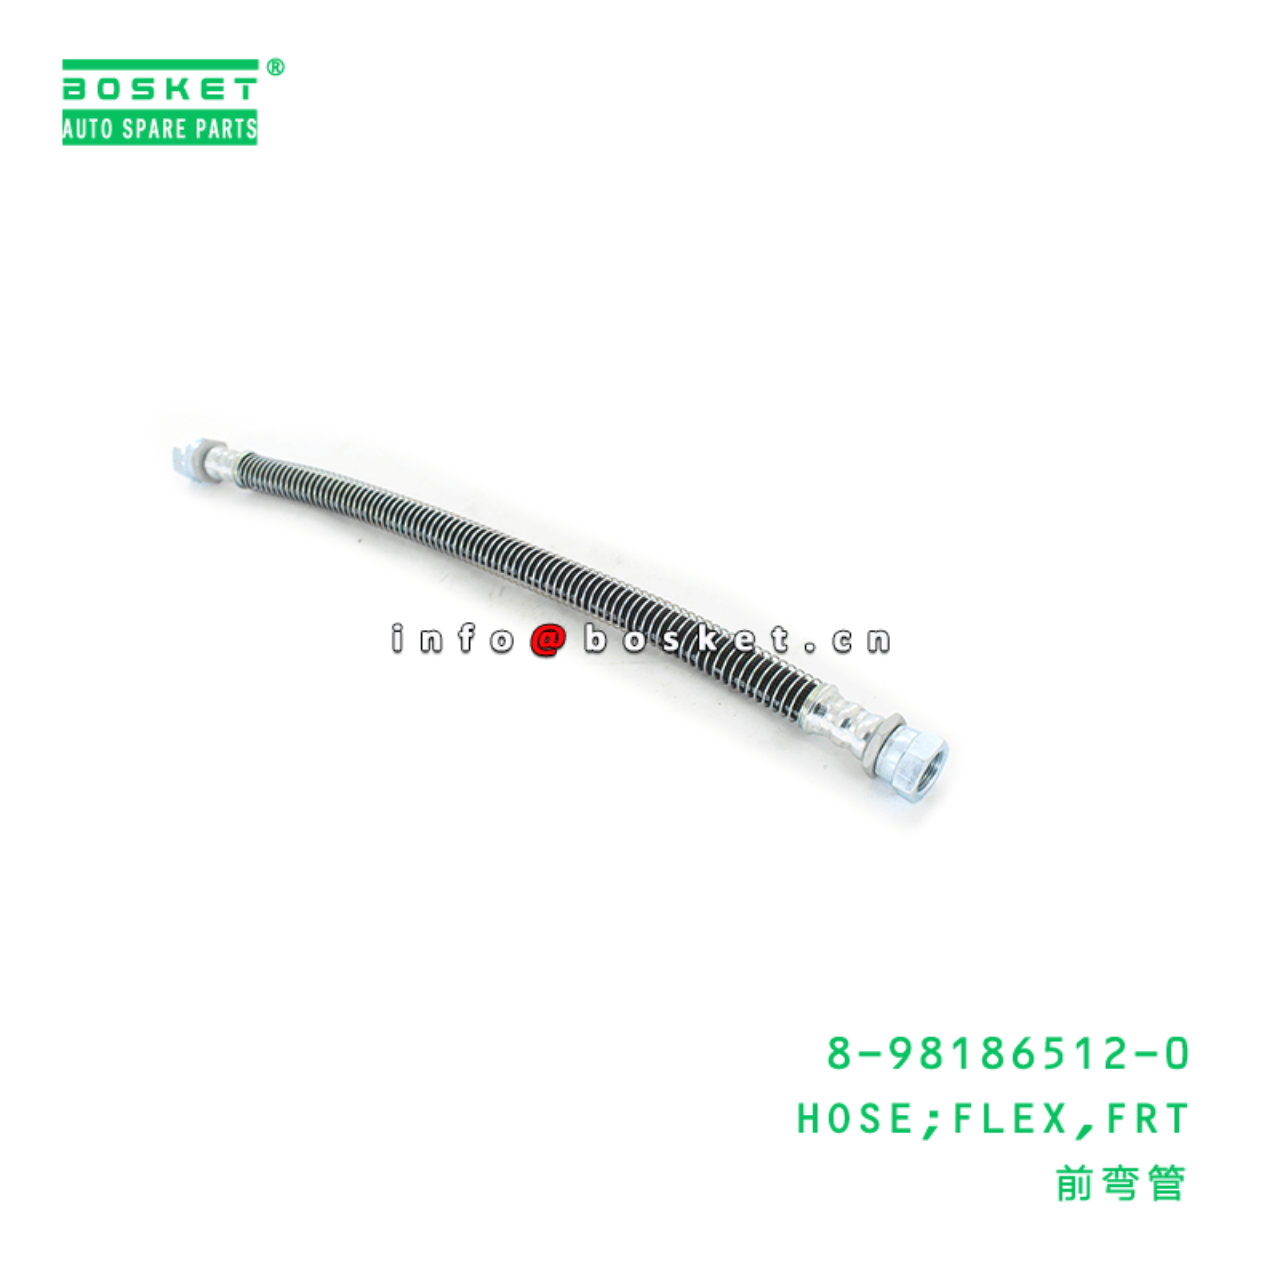 8-98186512-0 Front Flex Hose Suitable for ISUZU NQR 8981865120